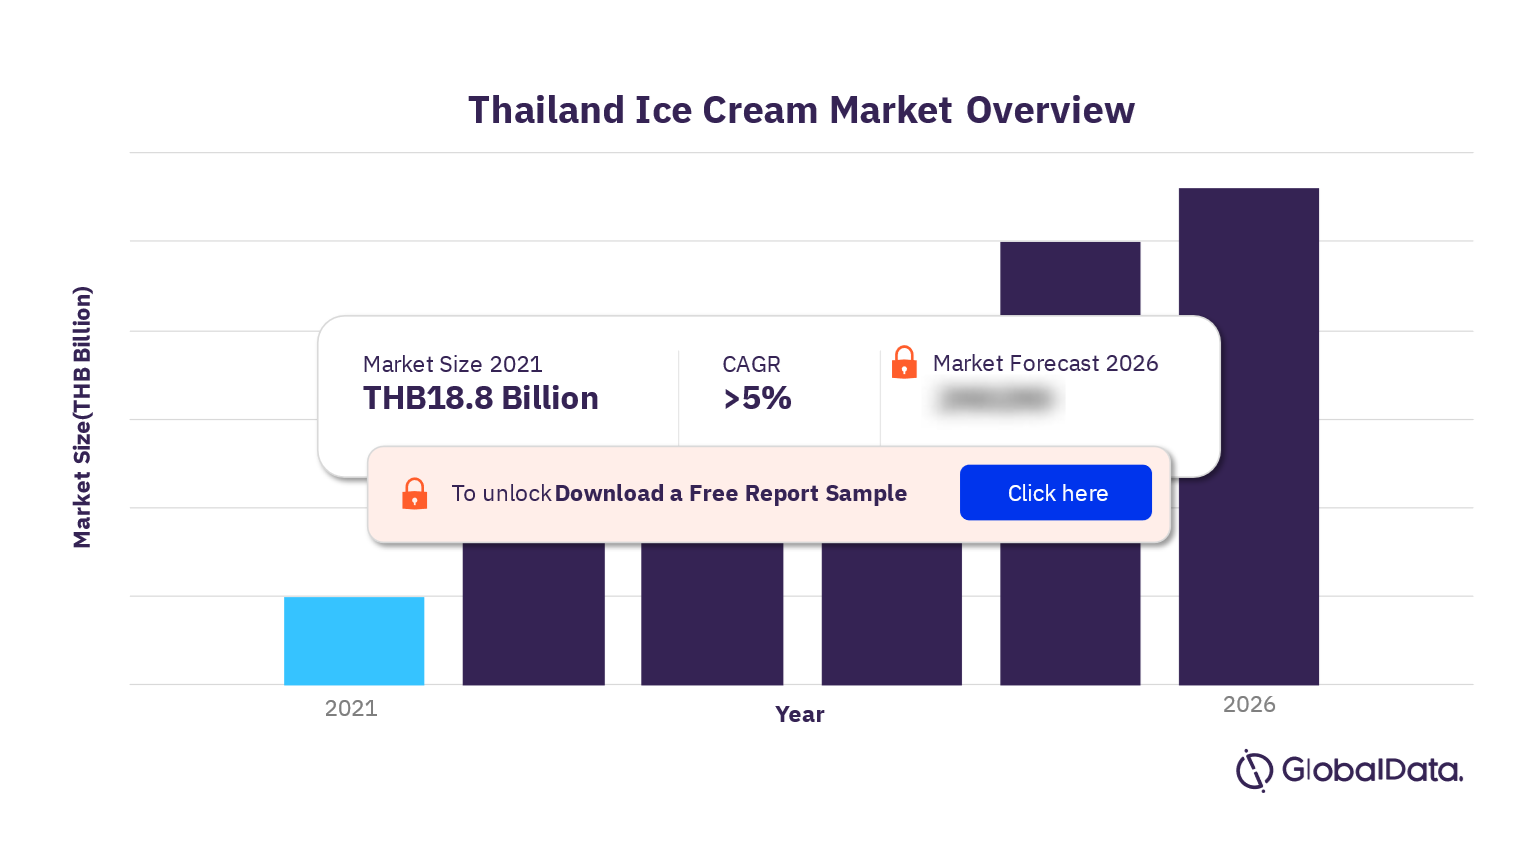 Thailand Ice Cream Market Size 